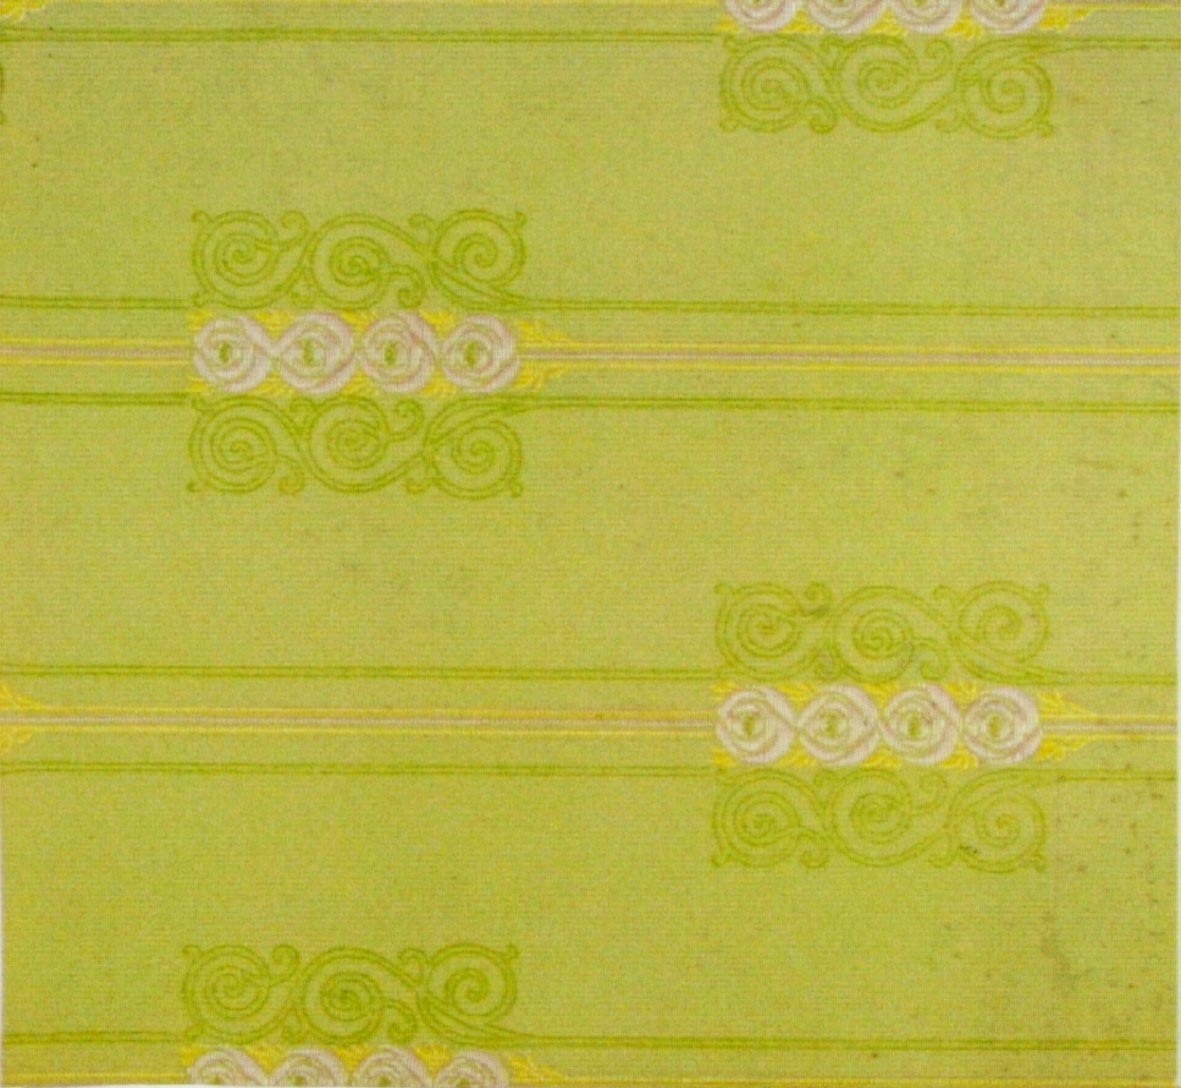 Randmönster med stiliserade rosor/ornament i diagonalupprepning. Tryck i vitt och gult samt i två gulgröna nyanser på ett ofärgat papper.